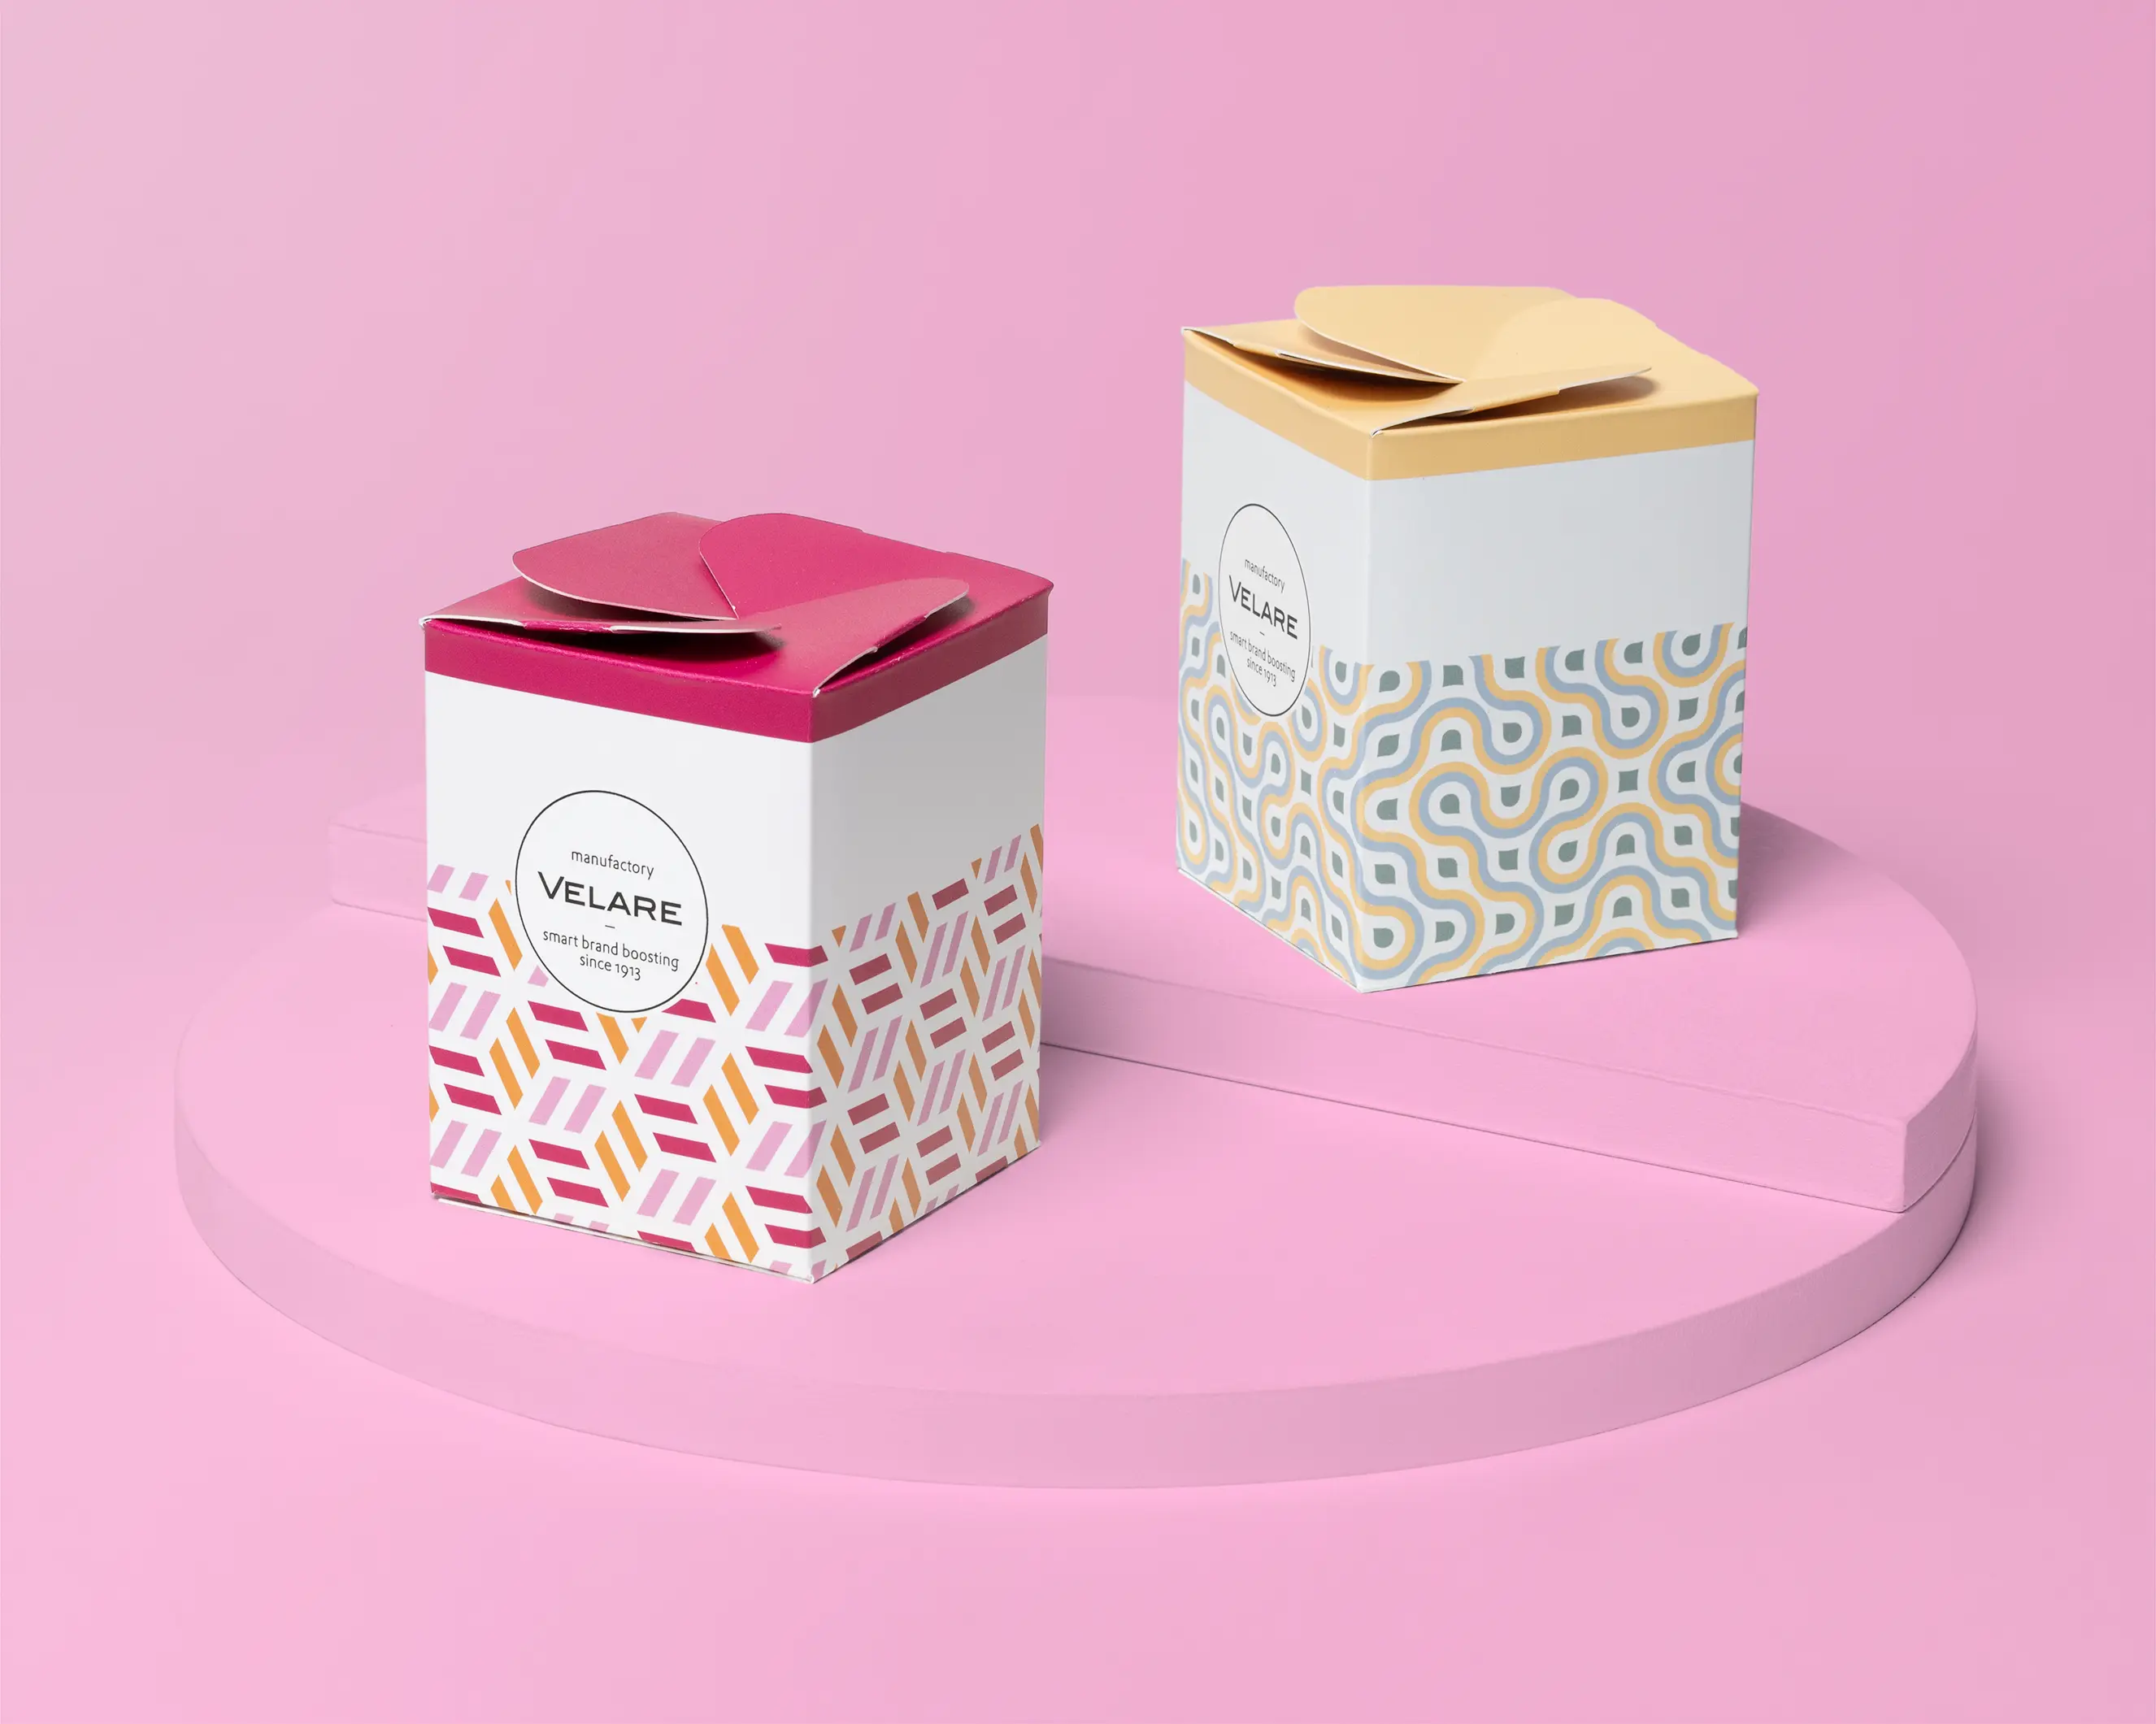  Geschenkverpackung mit Schleifenverschluss, zwei Verpackungen auf dem Podest, pinker Hintergrund